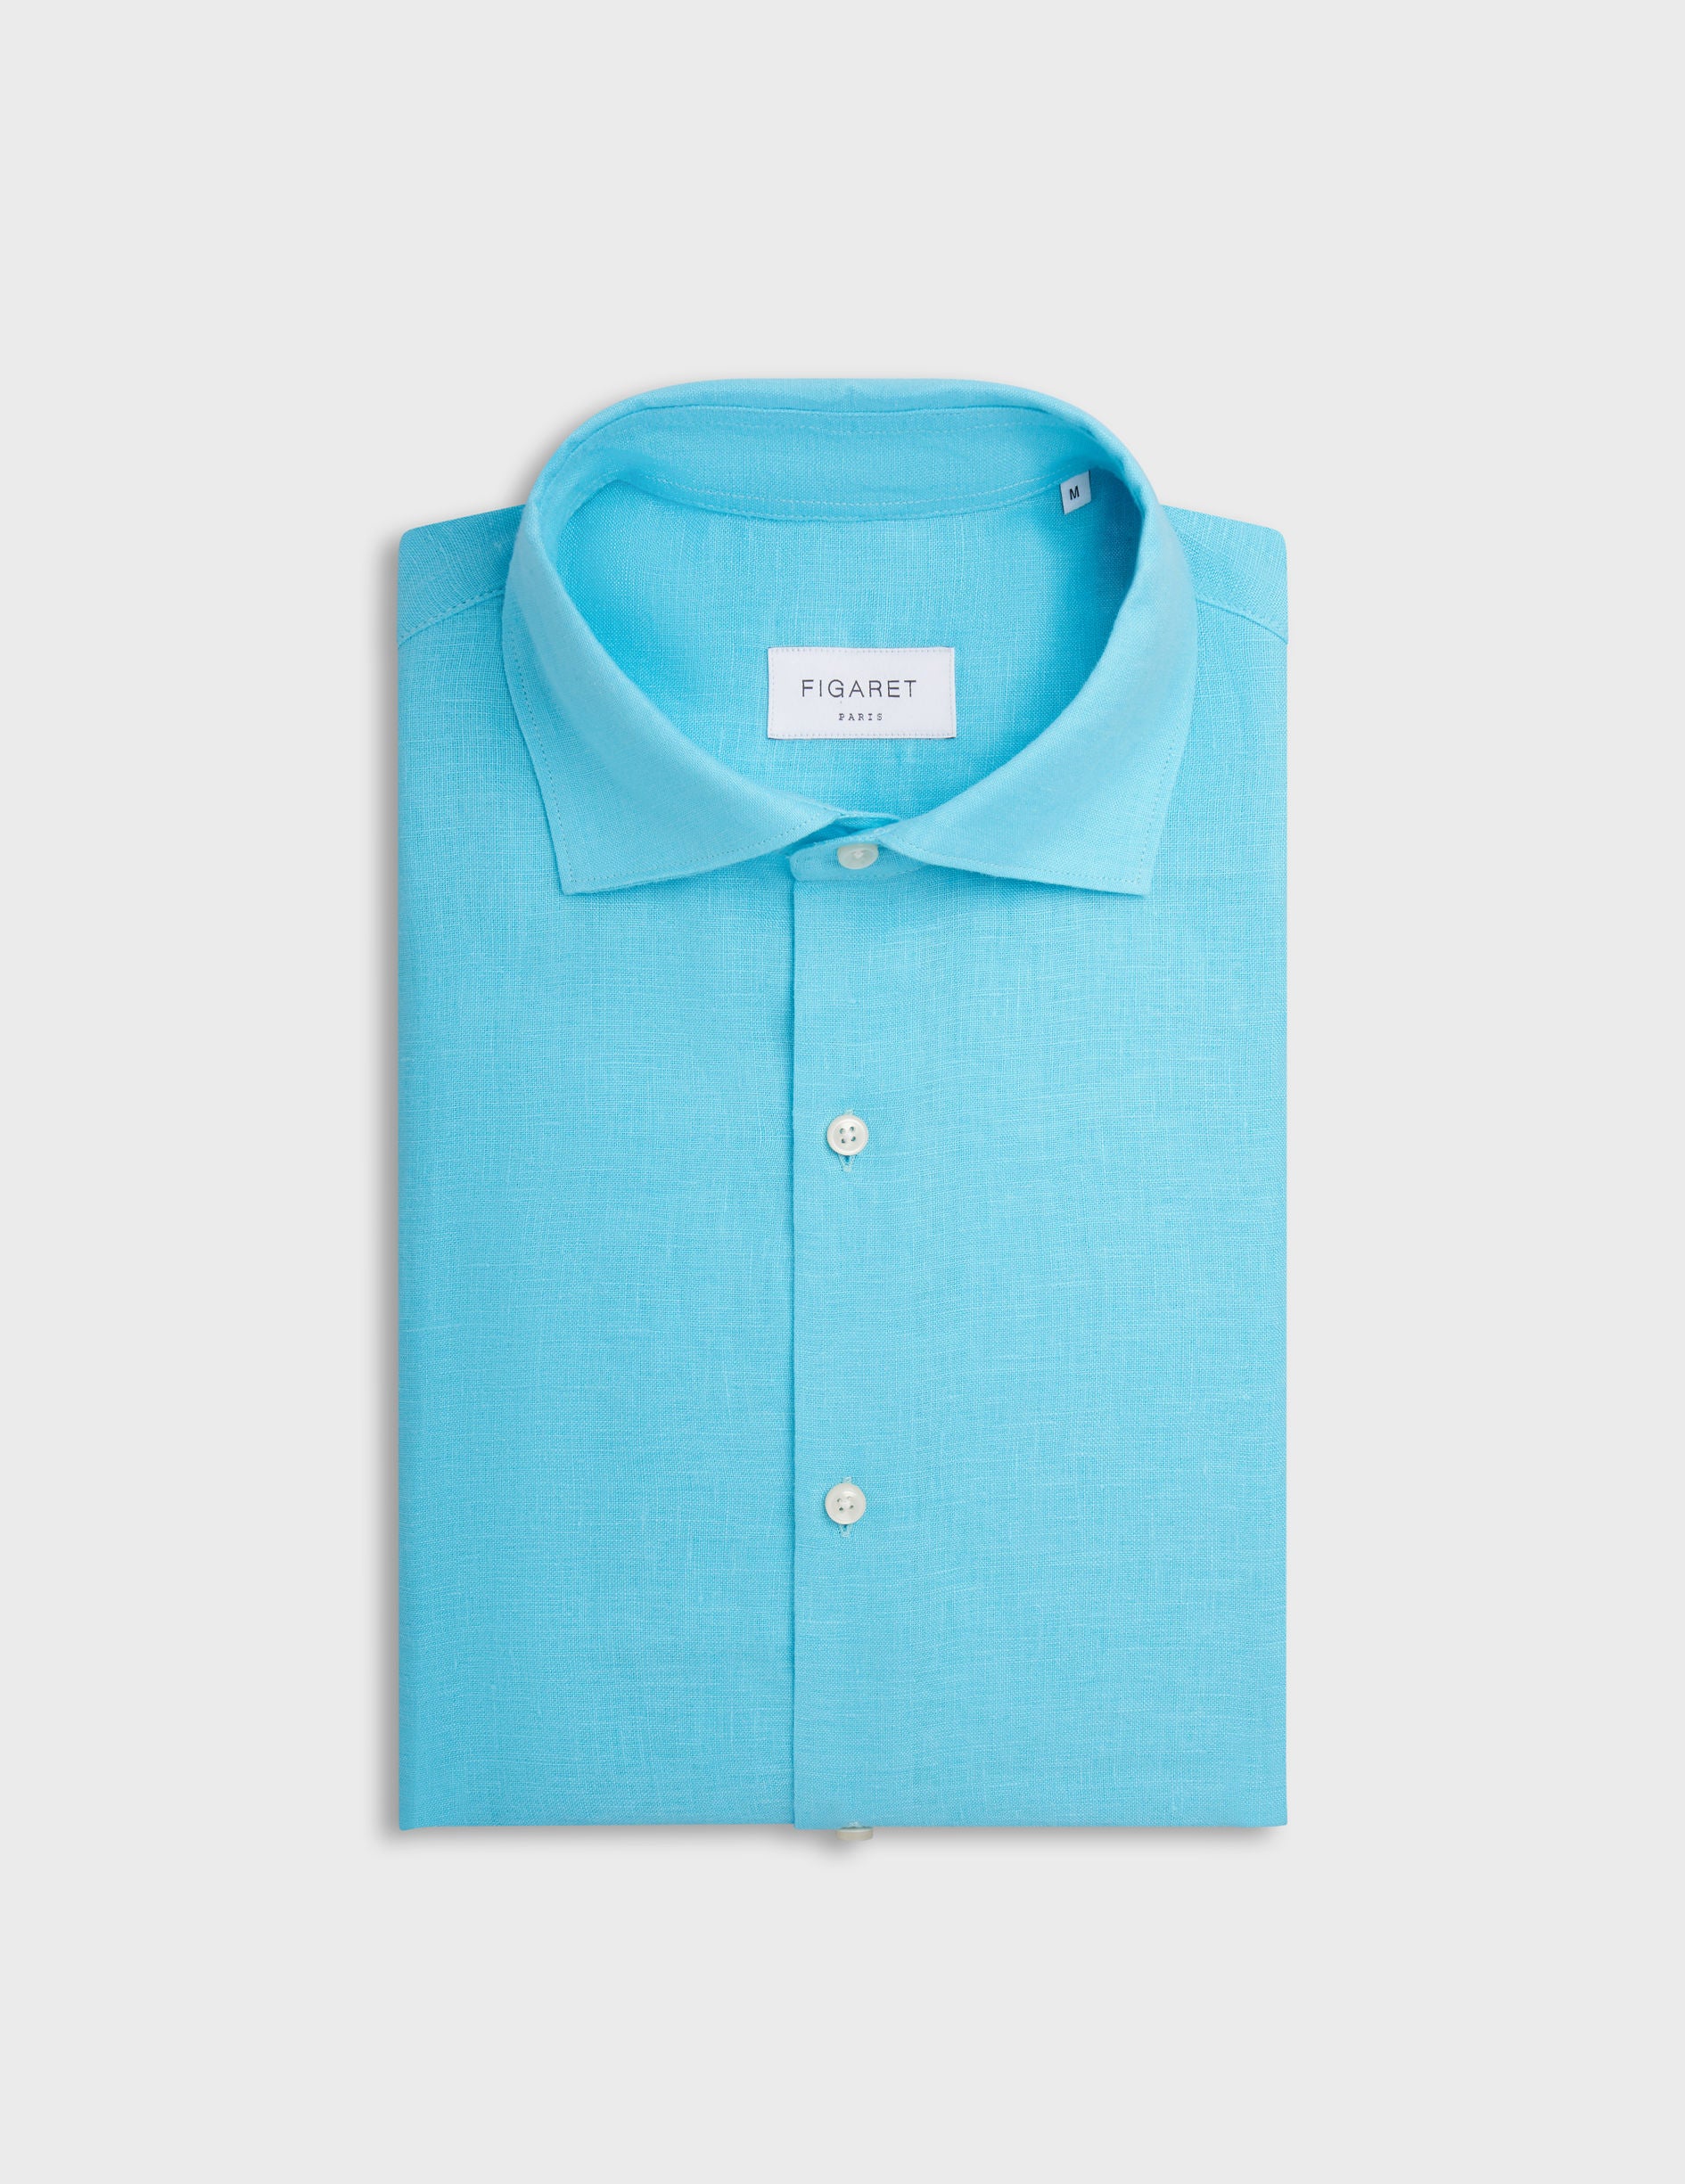 Aristote shirt in turquoise linen - Linen - Italian Collar